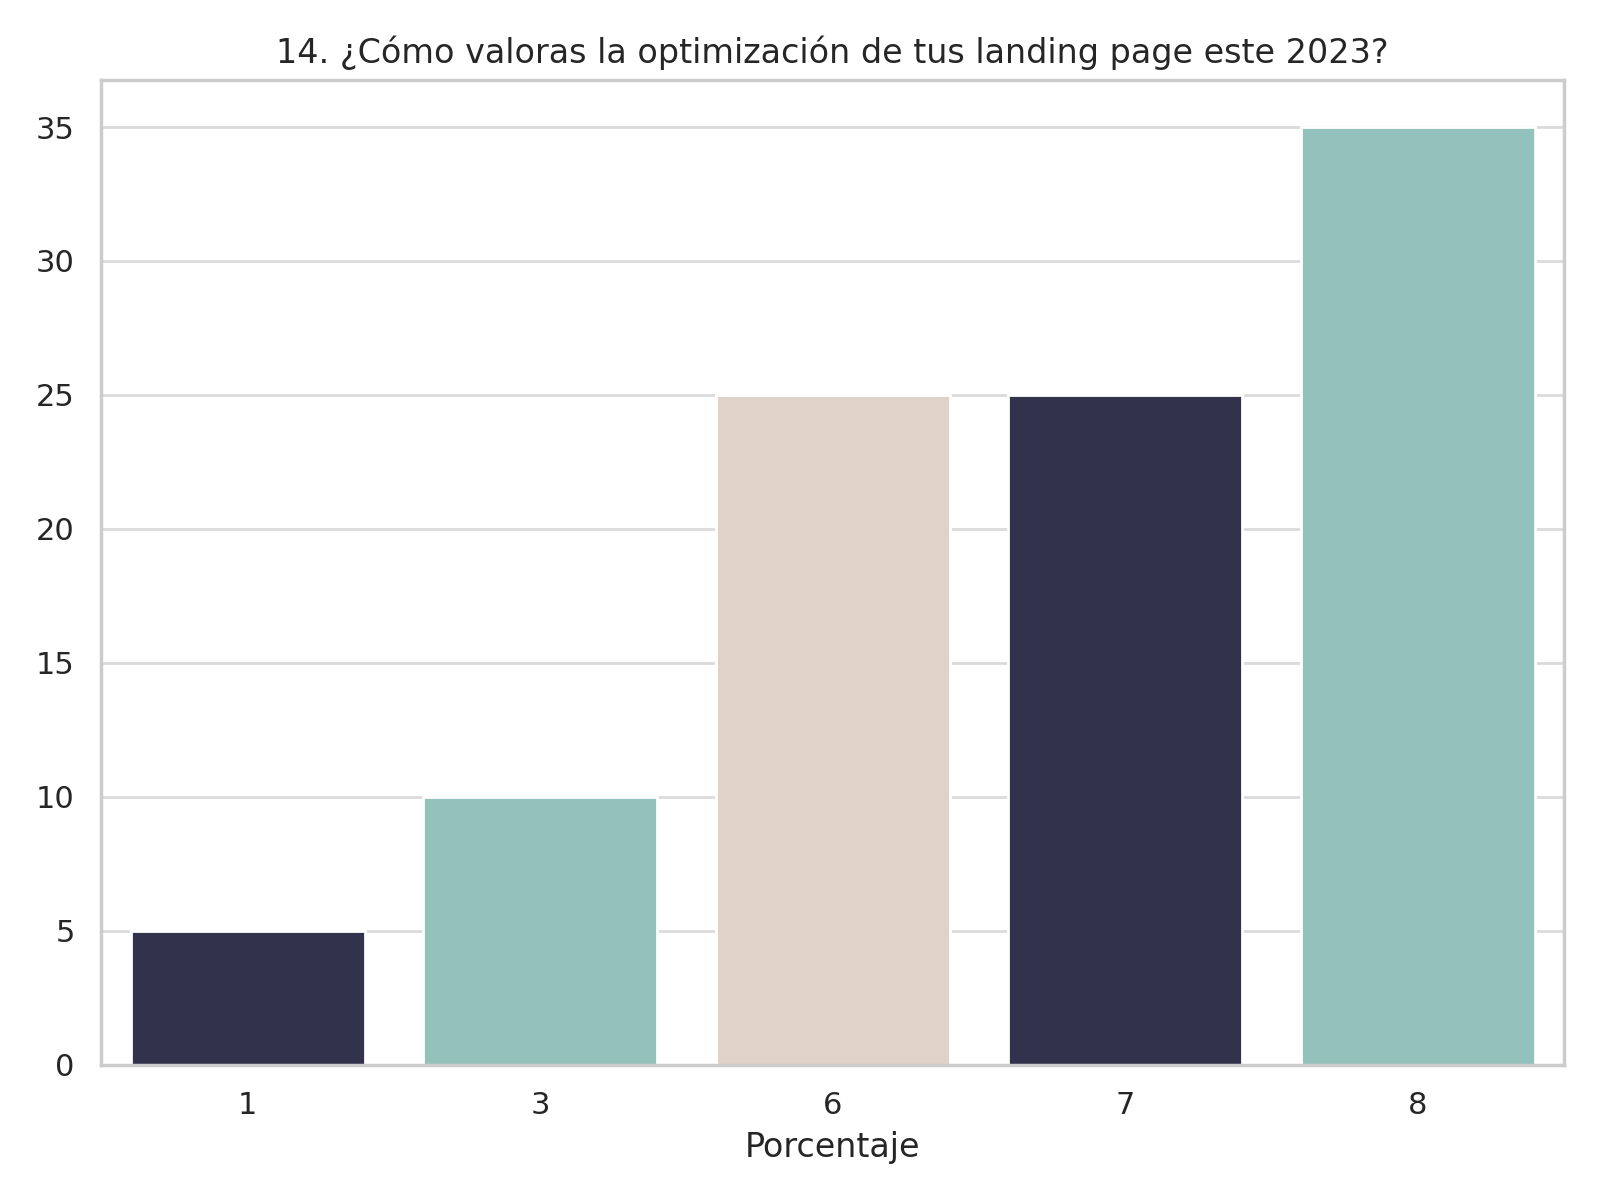 Valoración de la optimización de landing pages en 2023